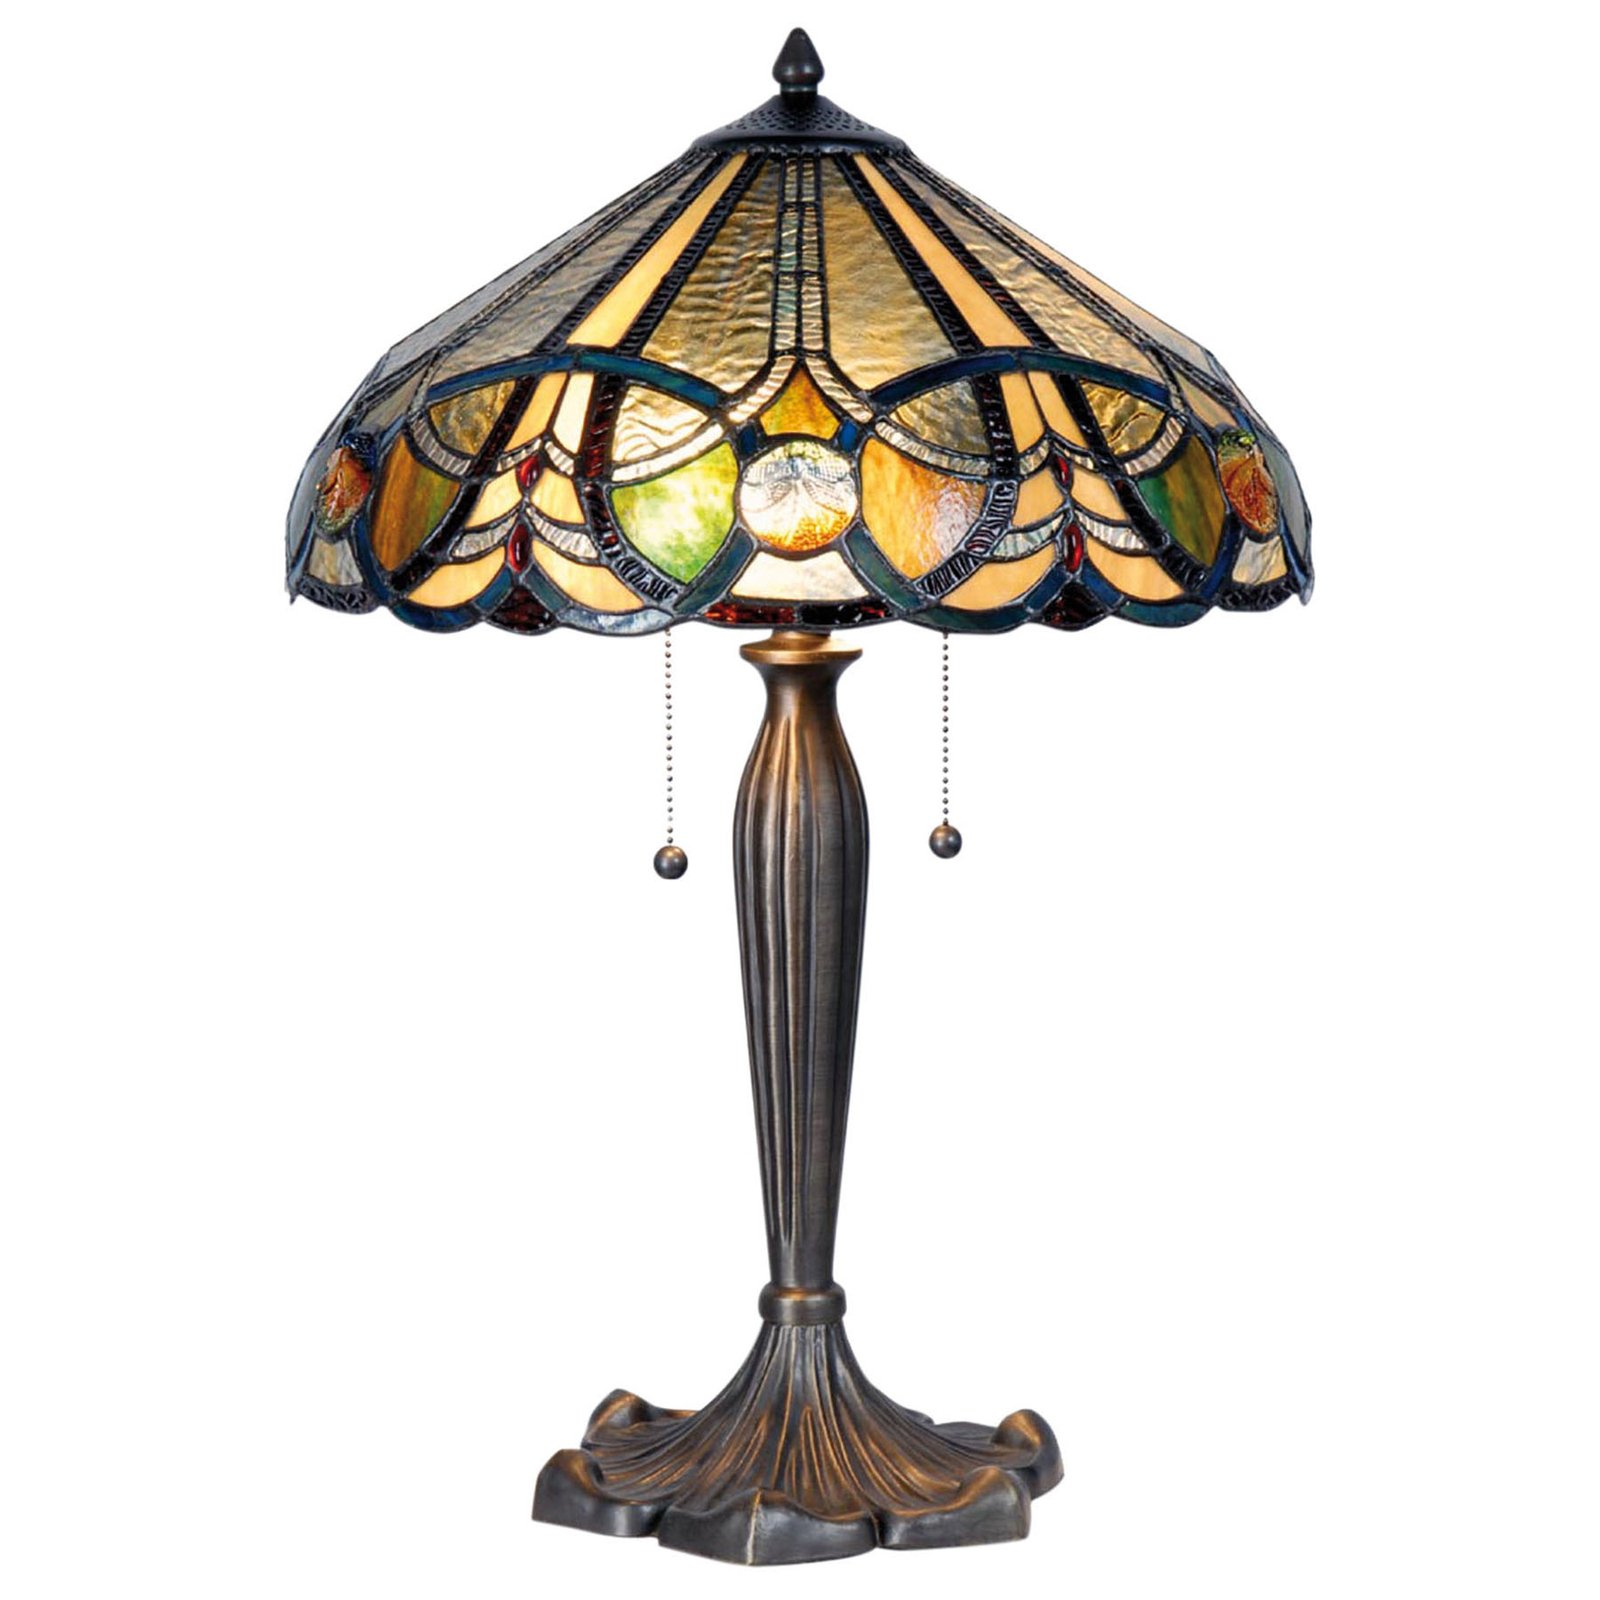 Lampa stołowa 5299 w stylu Tiffany, dwa włączniki